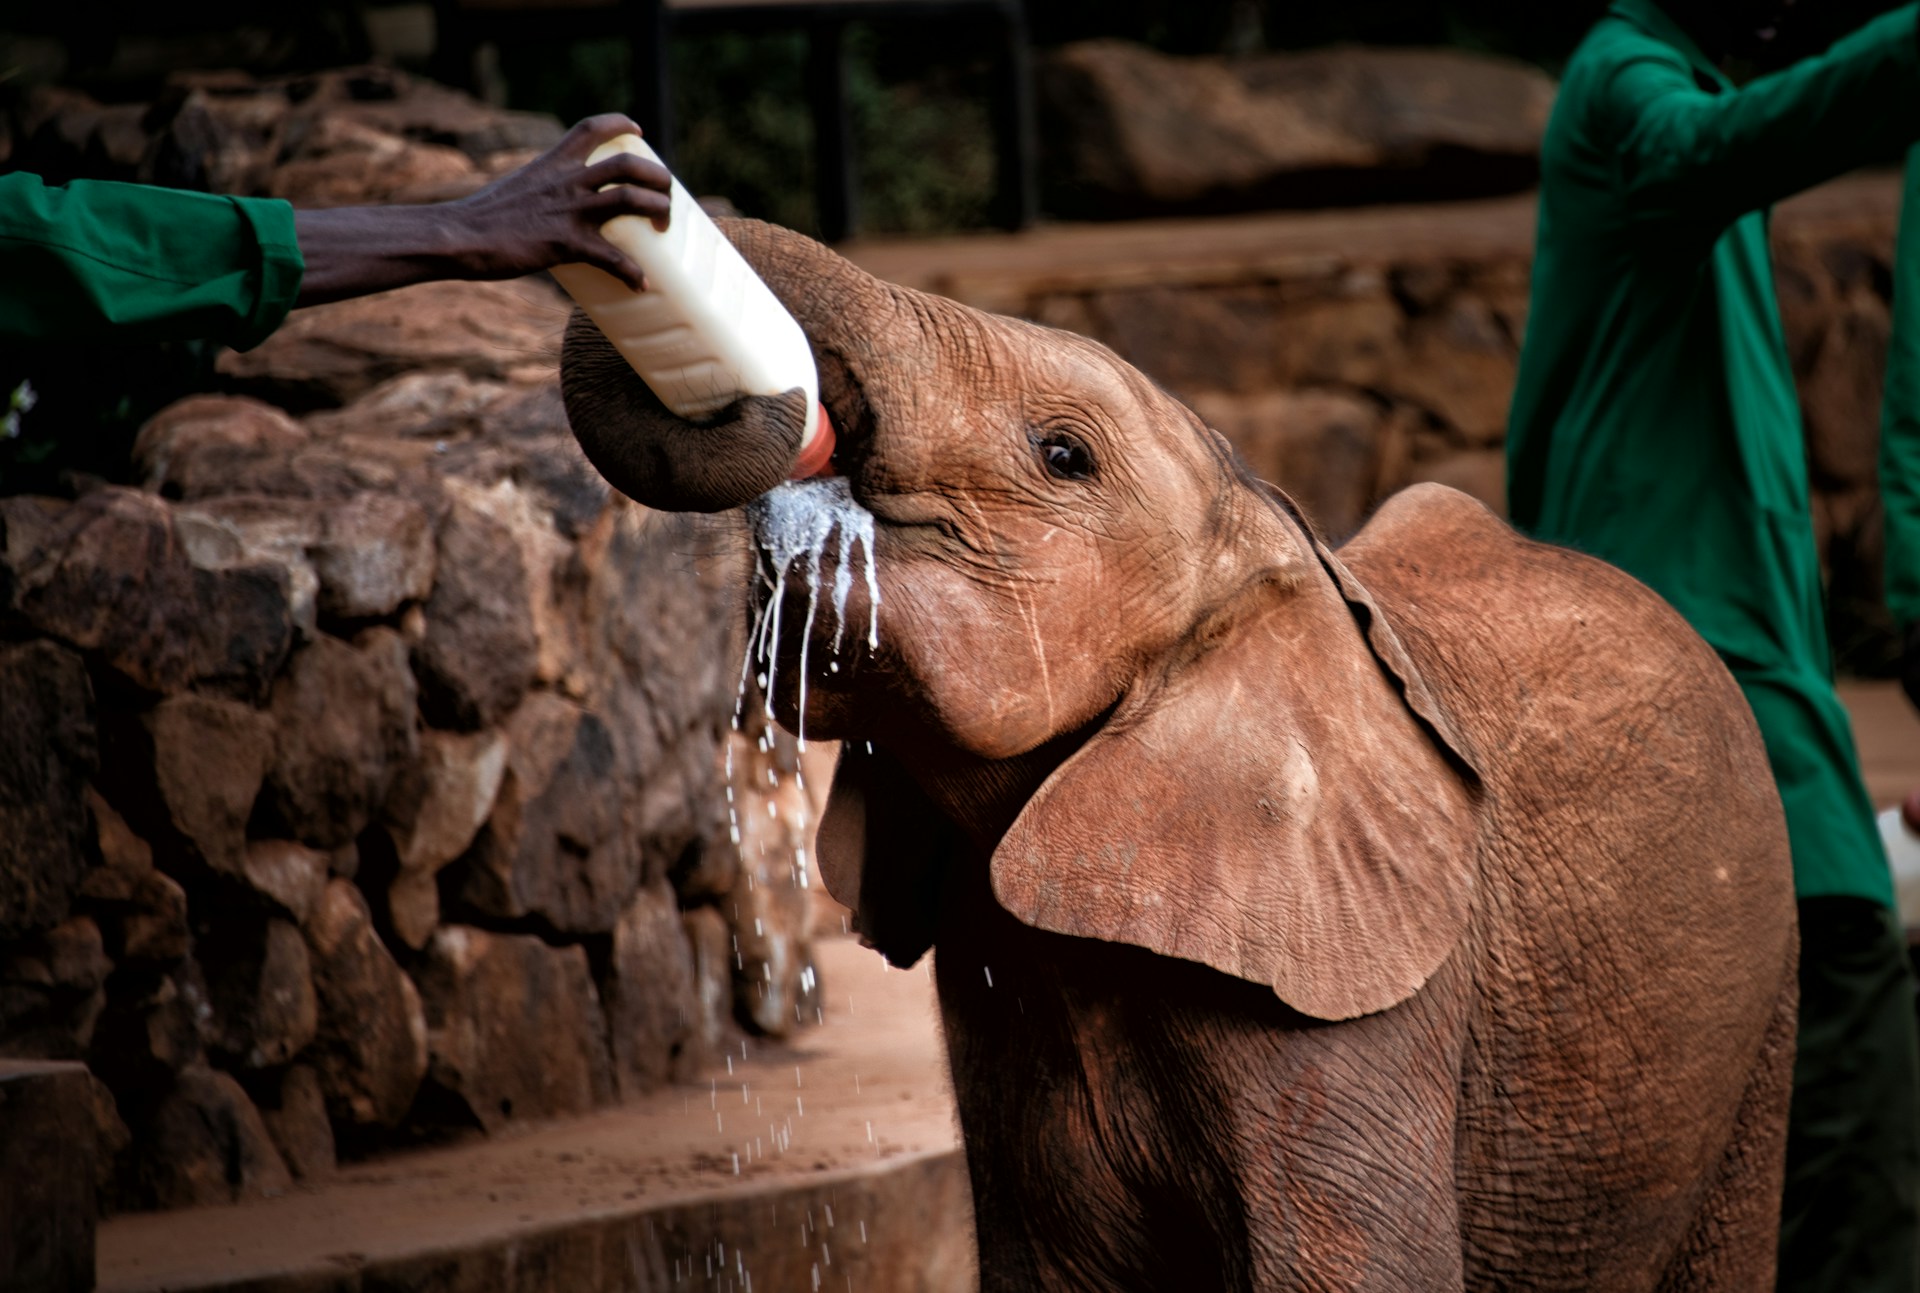 Sheldrick Wildlife Trust's Elephant Orphanage